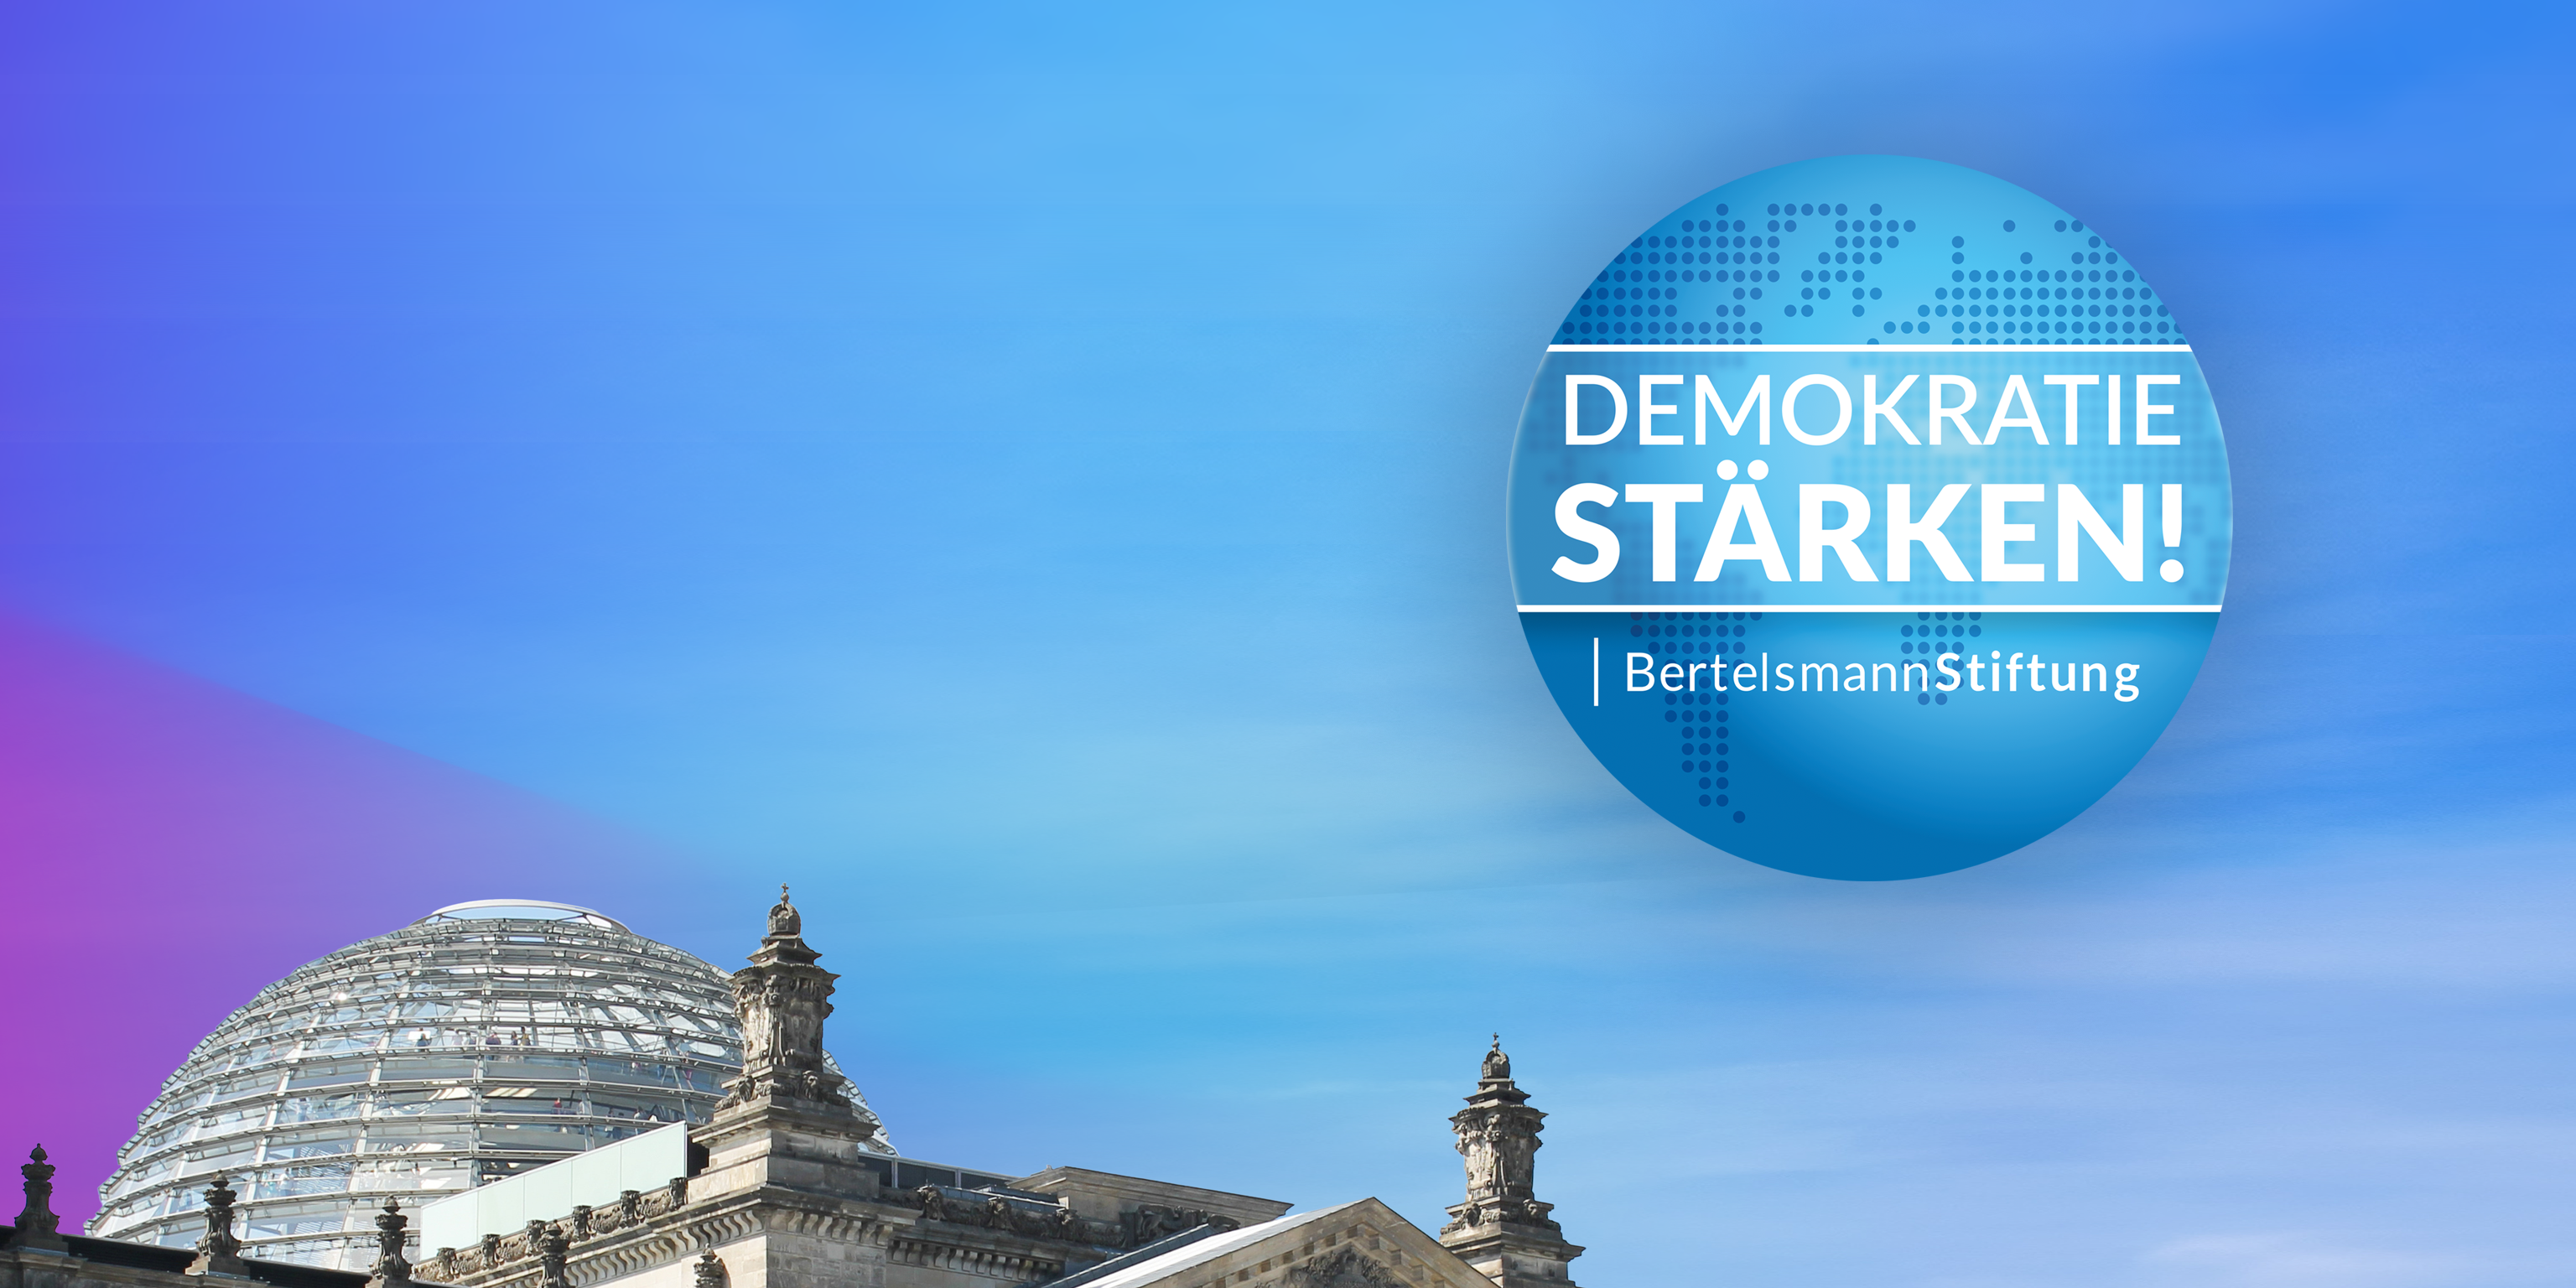 Visualisierung beziehungsweise Titelbild zur Online-Nutzung zu "Demokratie stärken!" bzw. "Strengthen Democracy!", dem Jahresthema 2024 der Bertelsmann Stiftung.